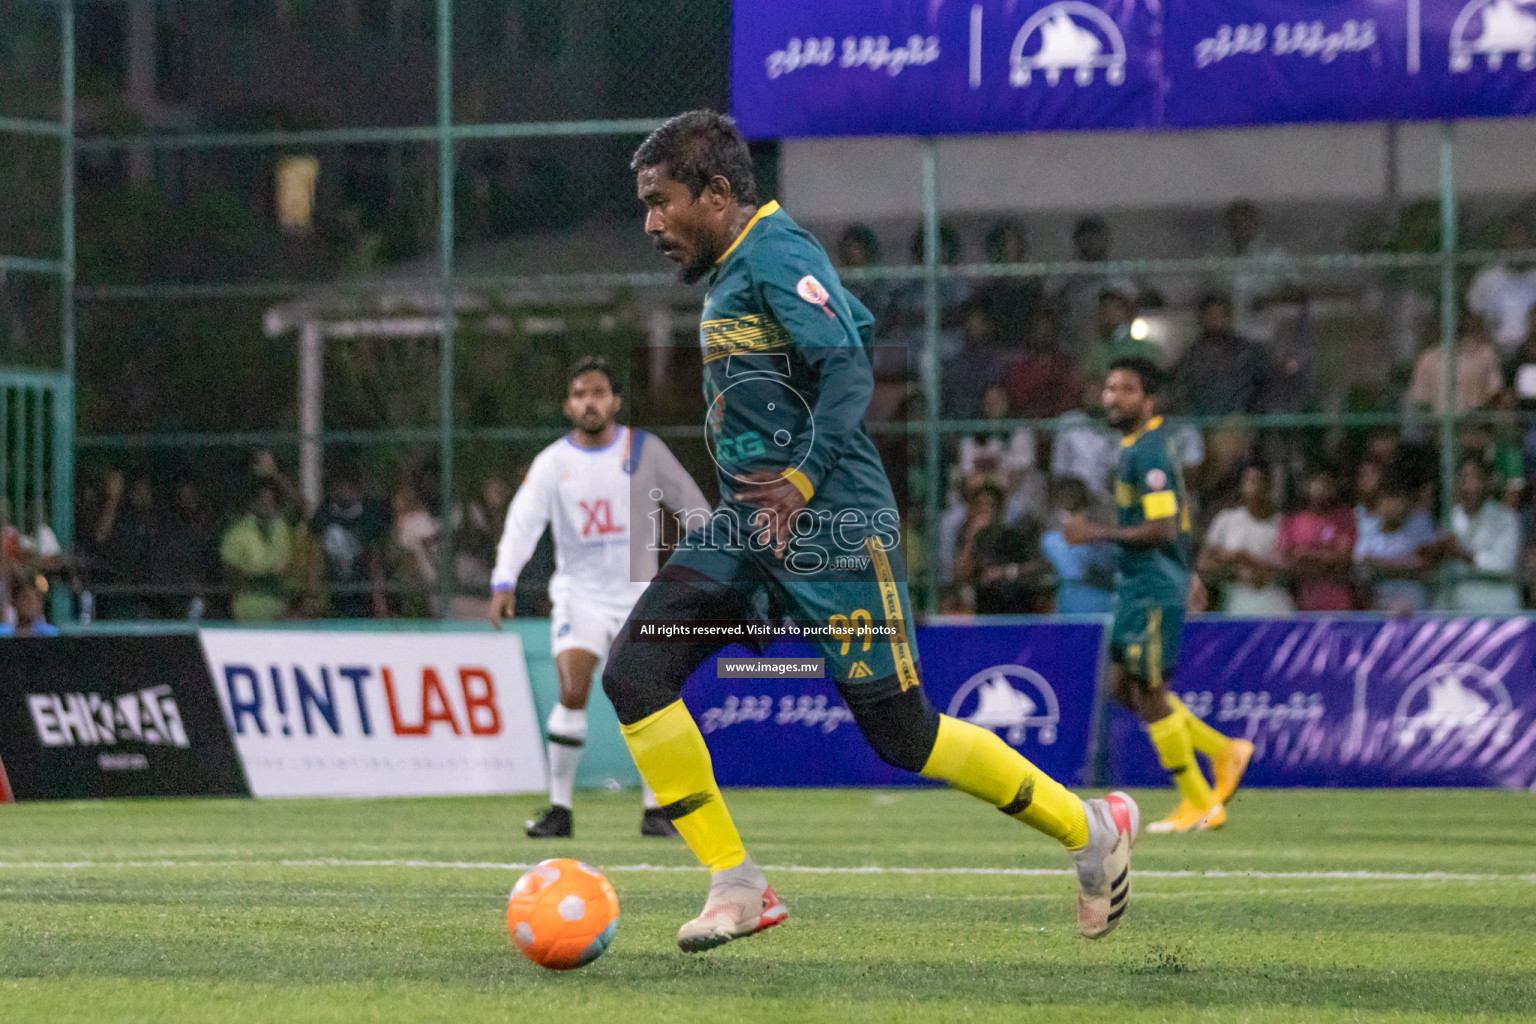 Club Maldives Day 6 - 26th November 2021, at Hulhumale. Photos by Nasam / Images.mv